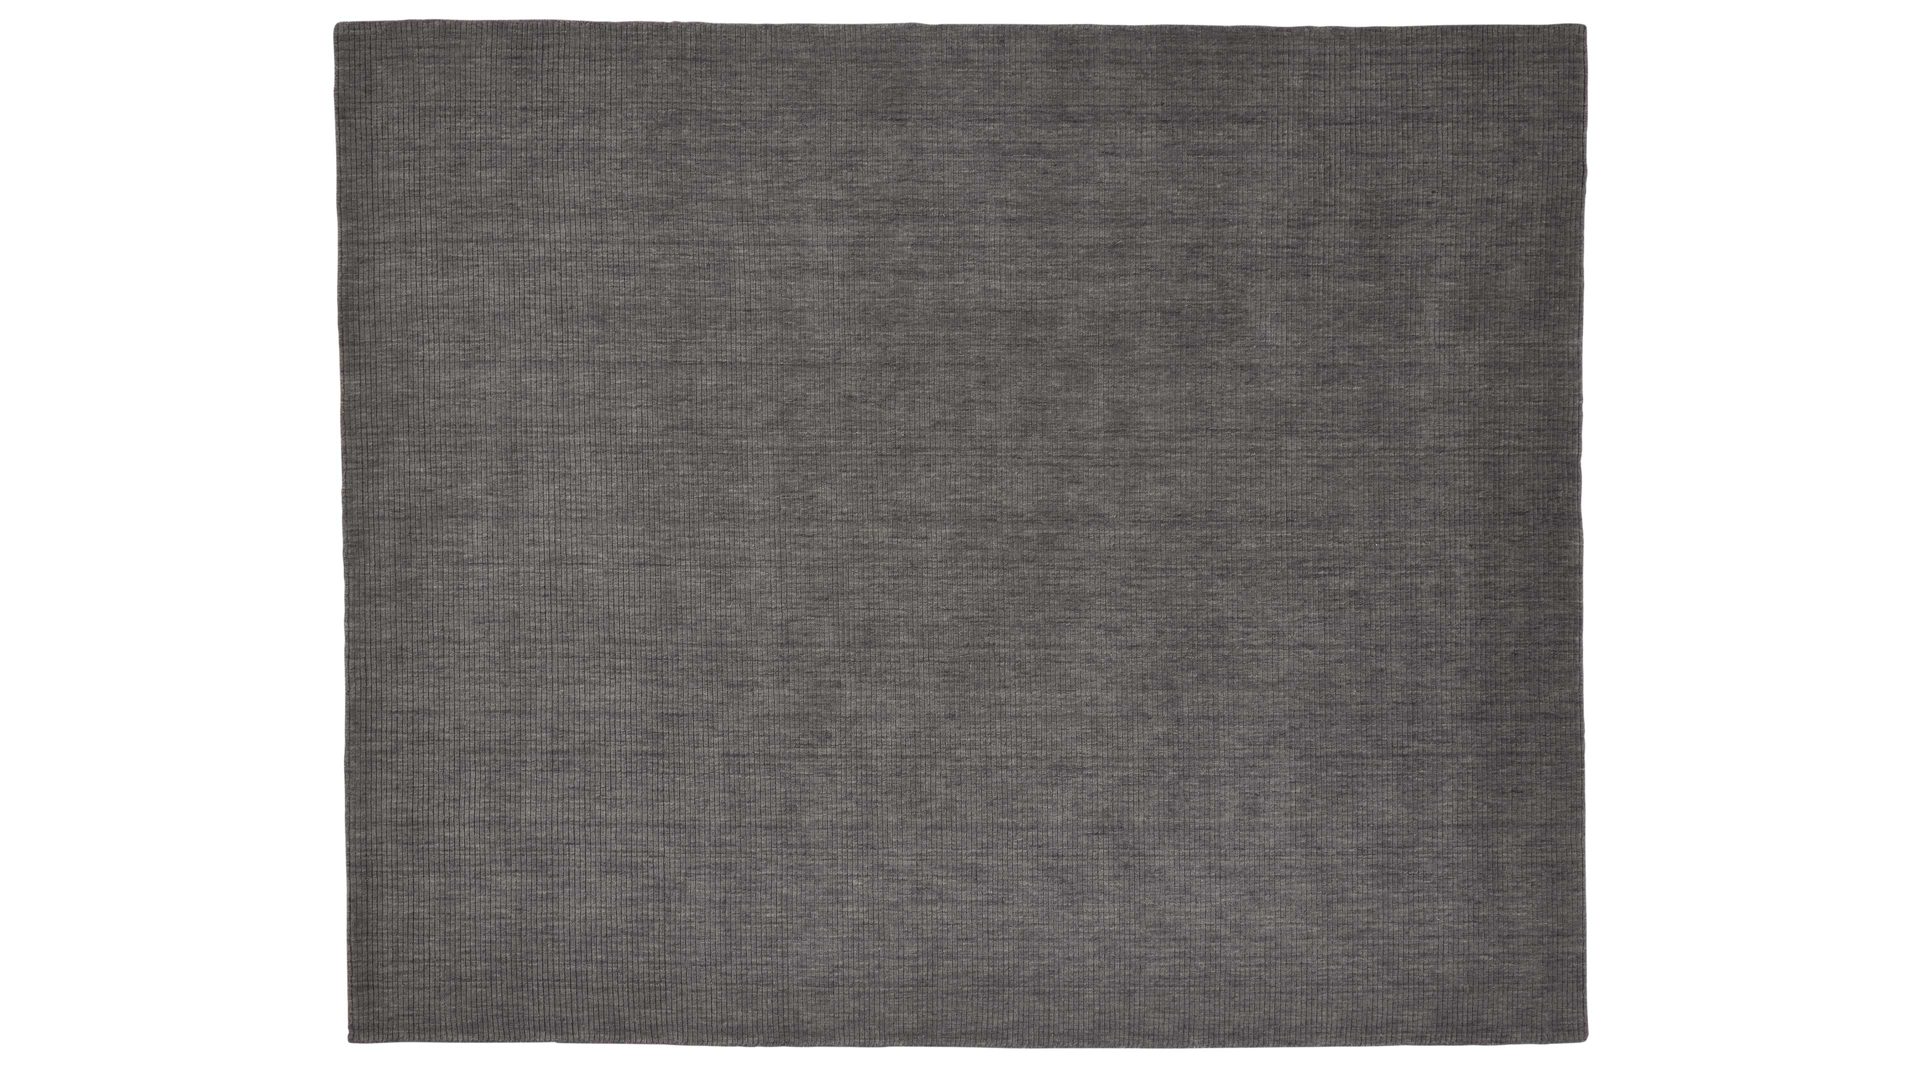 Handwebteppich Interliving aus Naturfaser in Grau Interliving Teppich Serie R-8120 Grau - ca. 200 x 300 cm